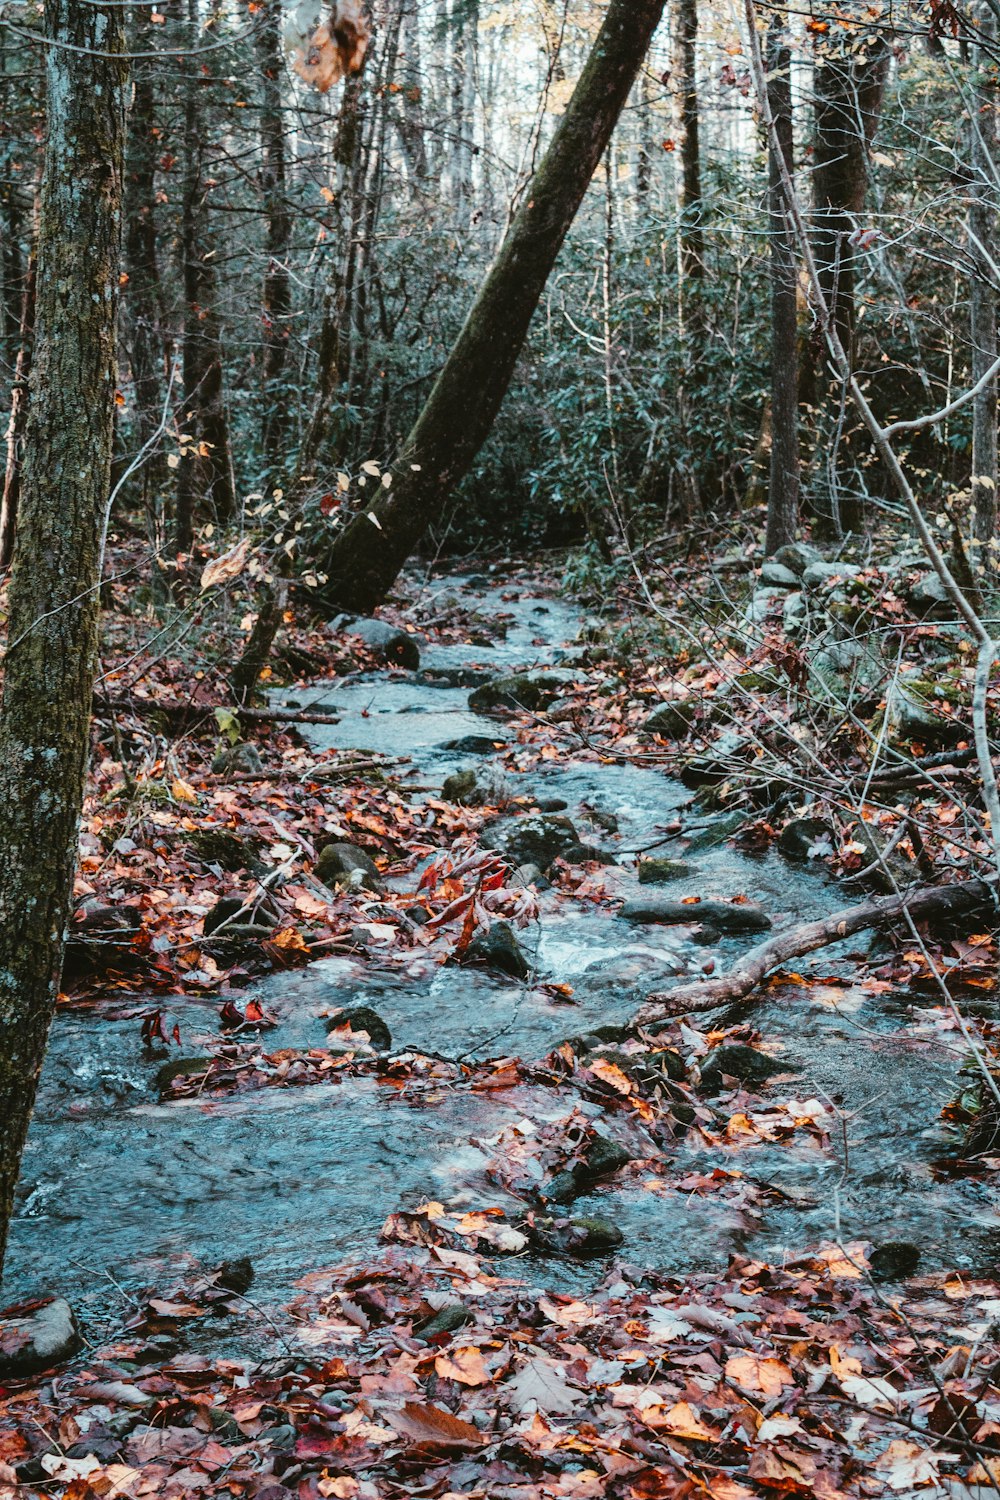 Un arroyo que atraviesa un bosque lleno de muchas hojas